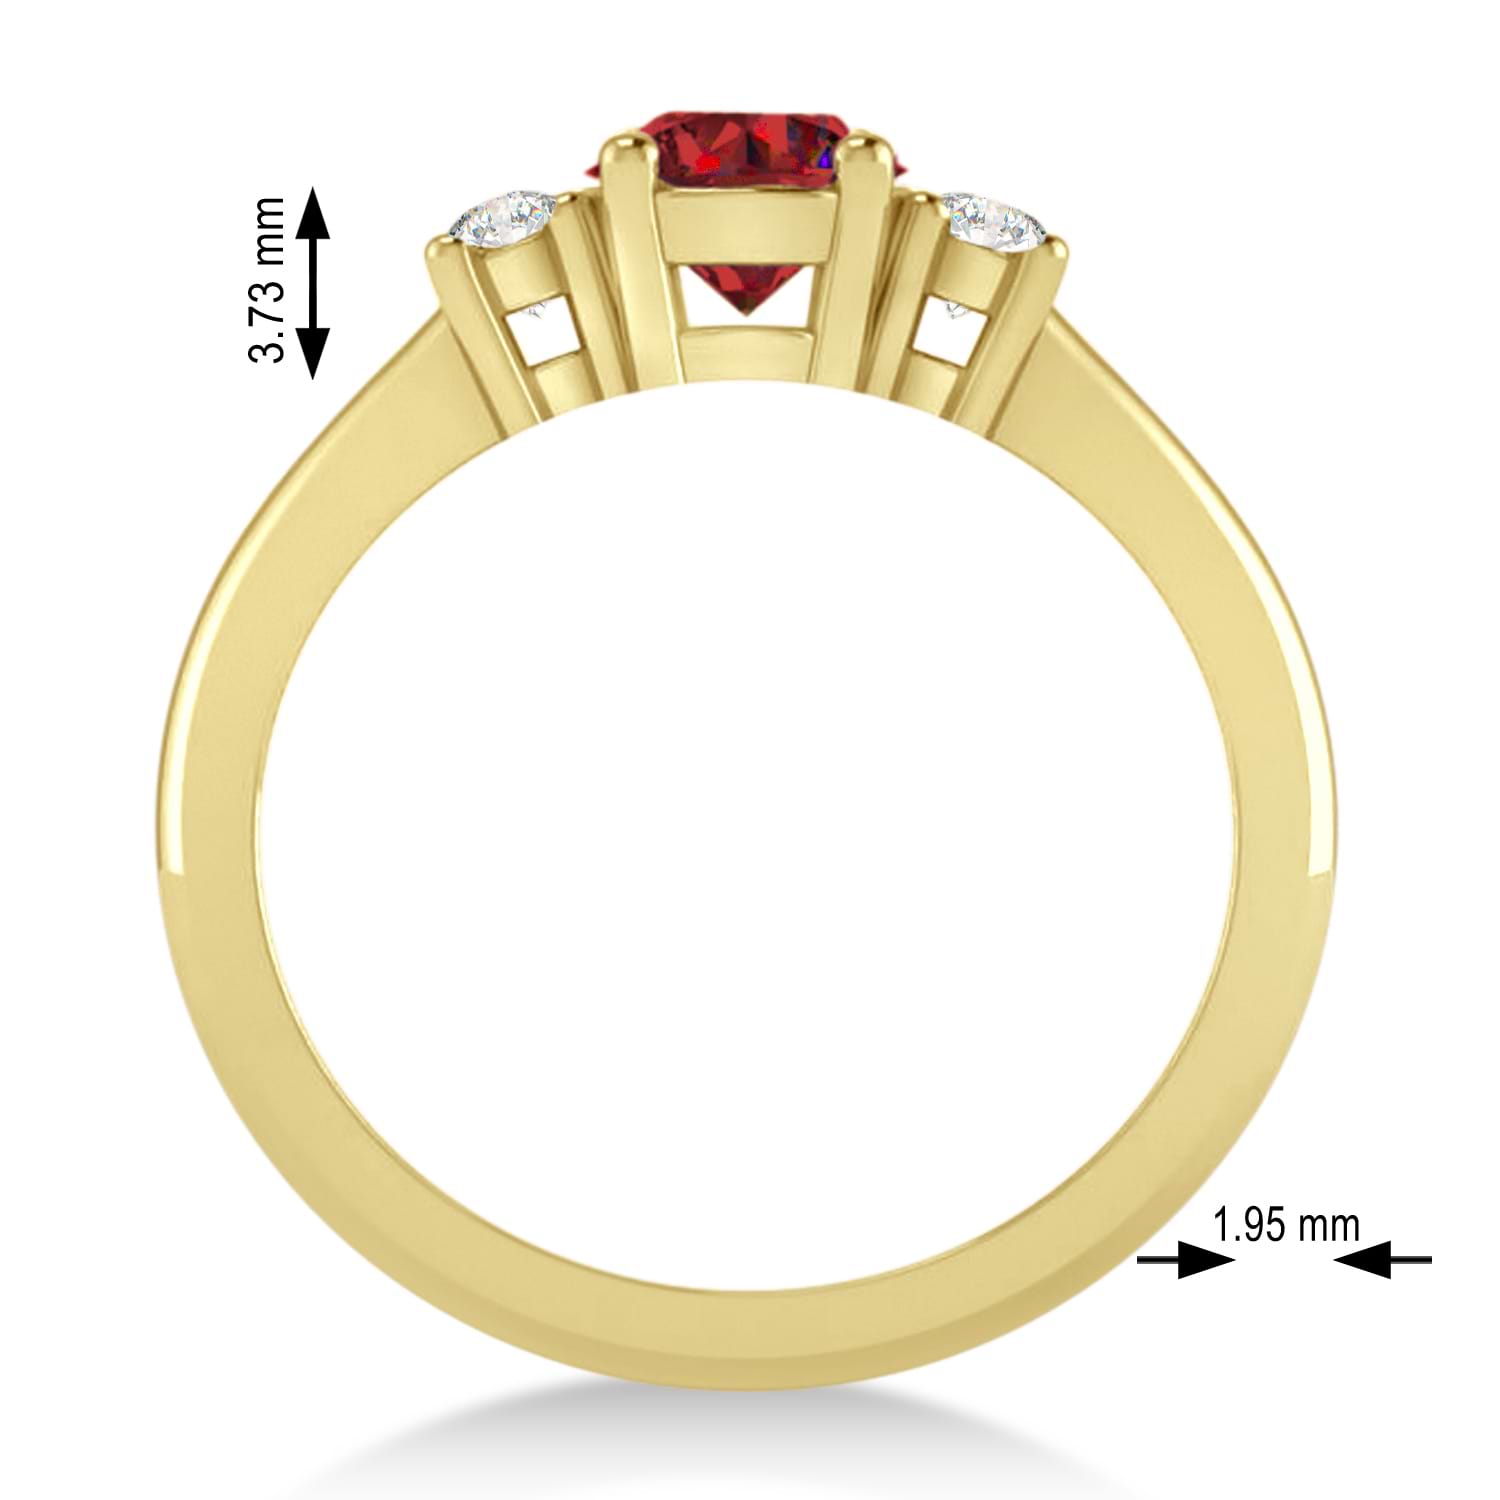 Round Ruby & Diamond Three-Stone Engagement Ring 14k Yellow Gold (0.89ct)